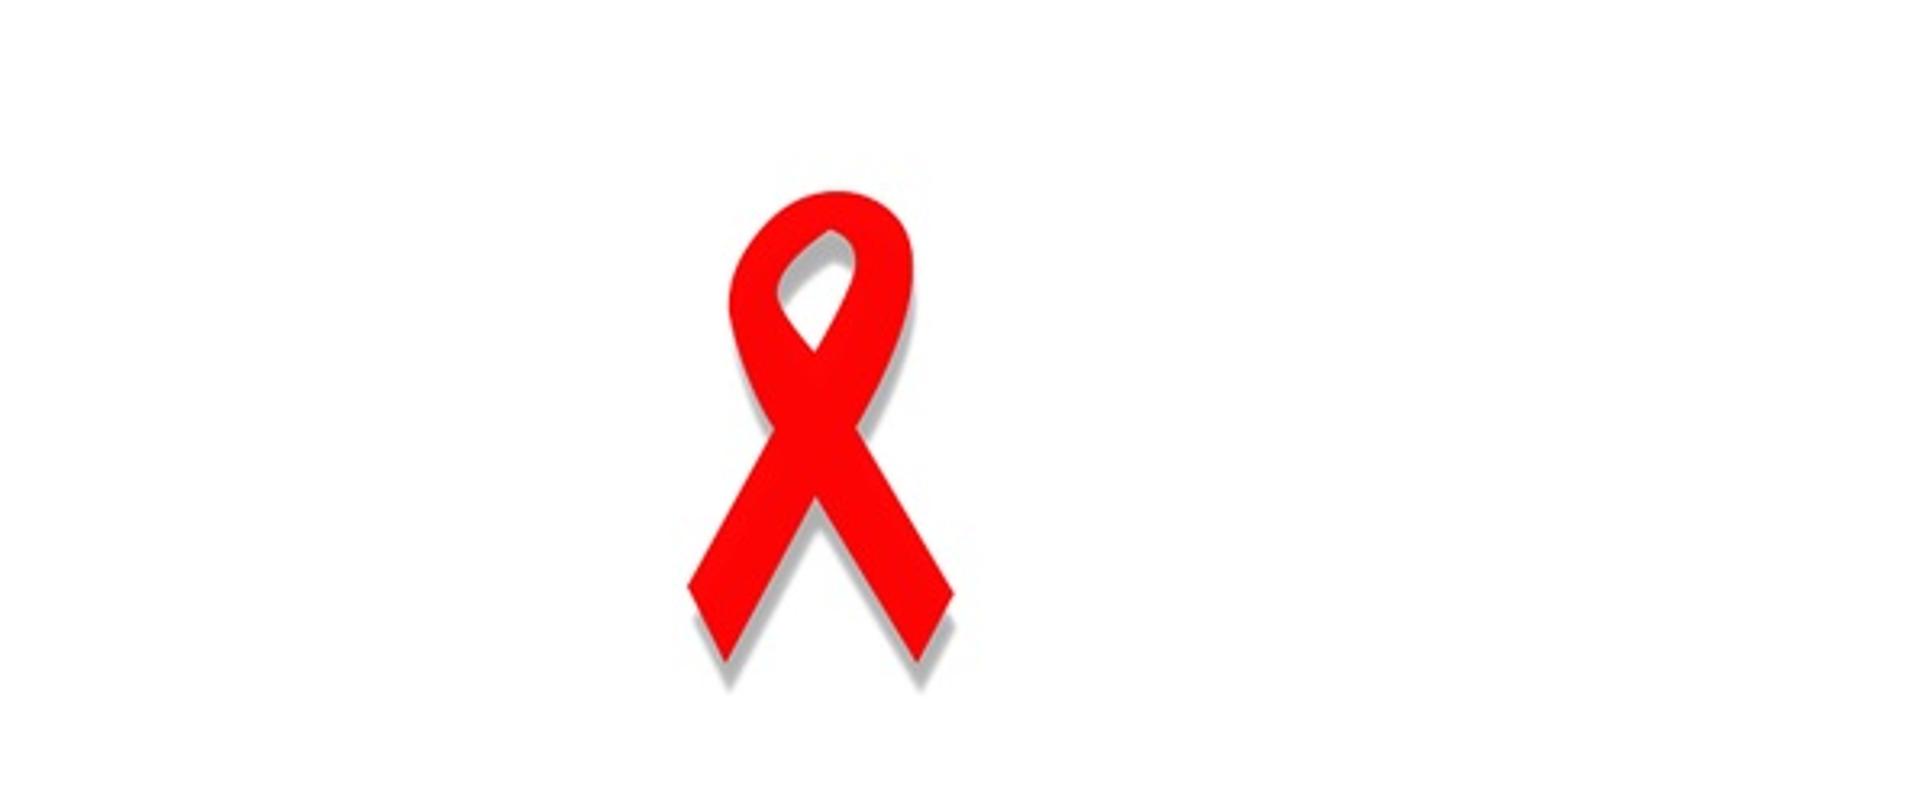 Na białym tle znajduje się czerwona wstążka, która jest symbolem solidarności z osobami żyjącymi z HIV i AIDS, ich rodzinami i przyjaciółmi.